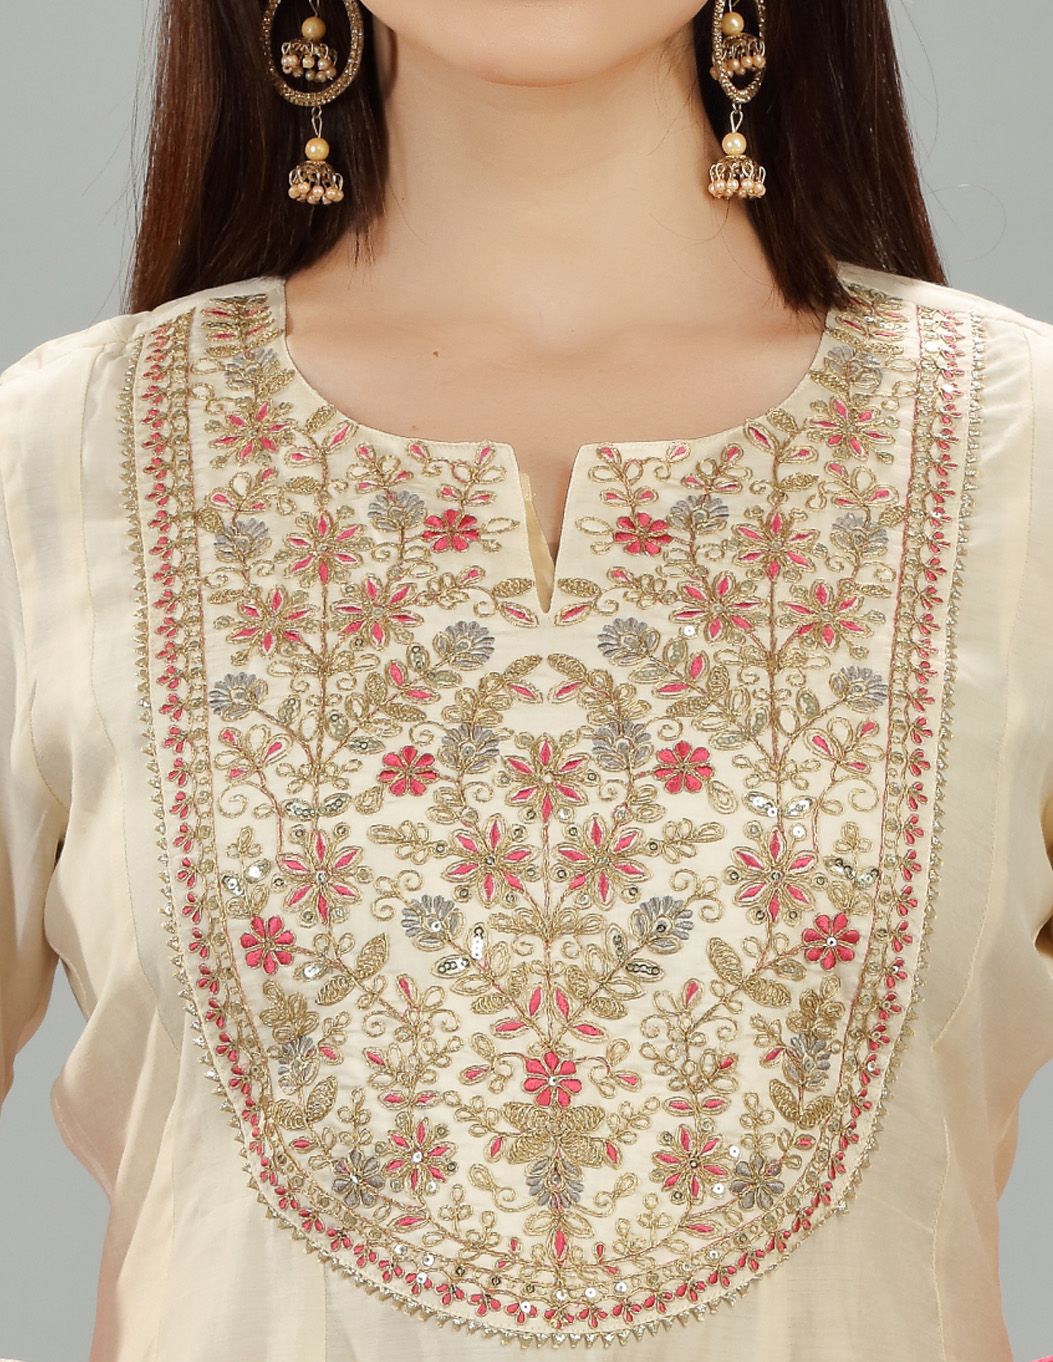 Saaisha Cream Chanderi Embroidered Suit Set